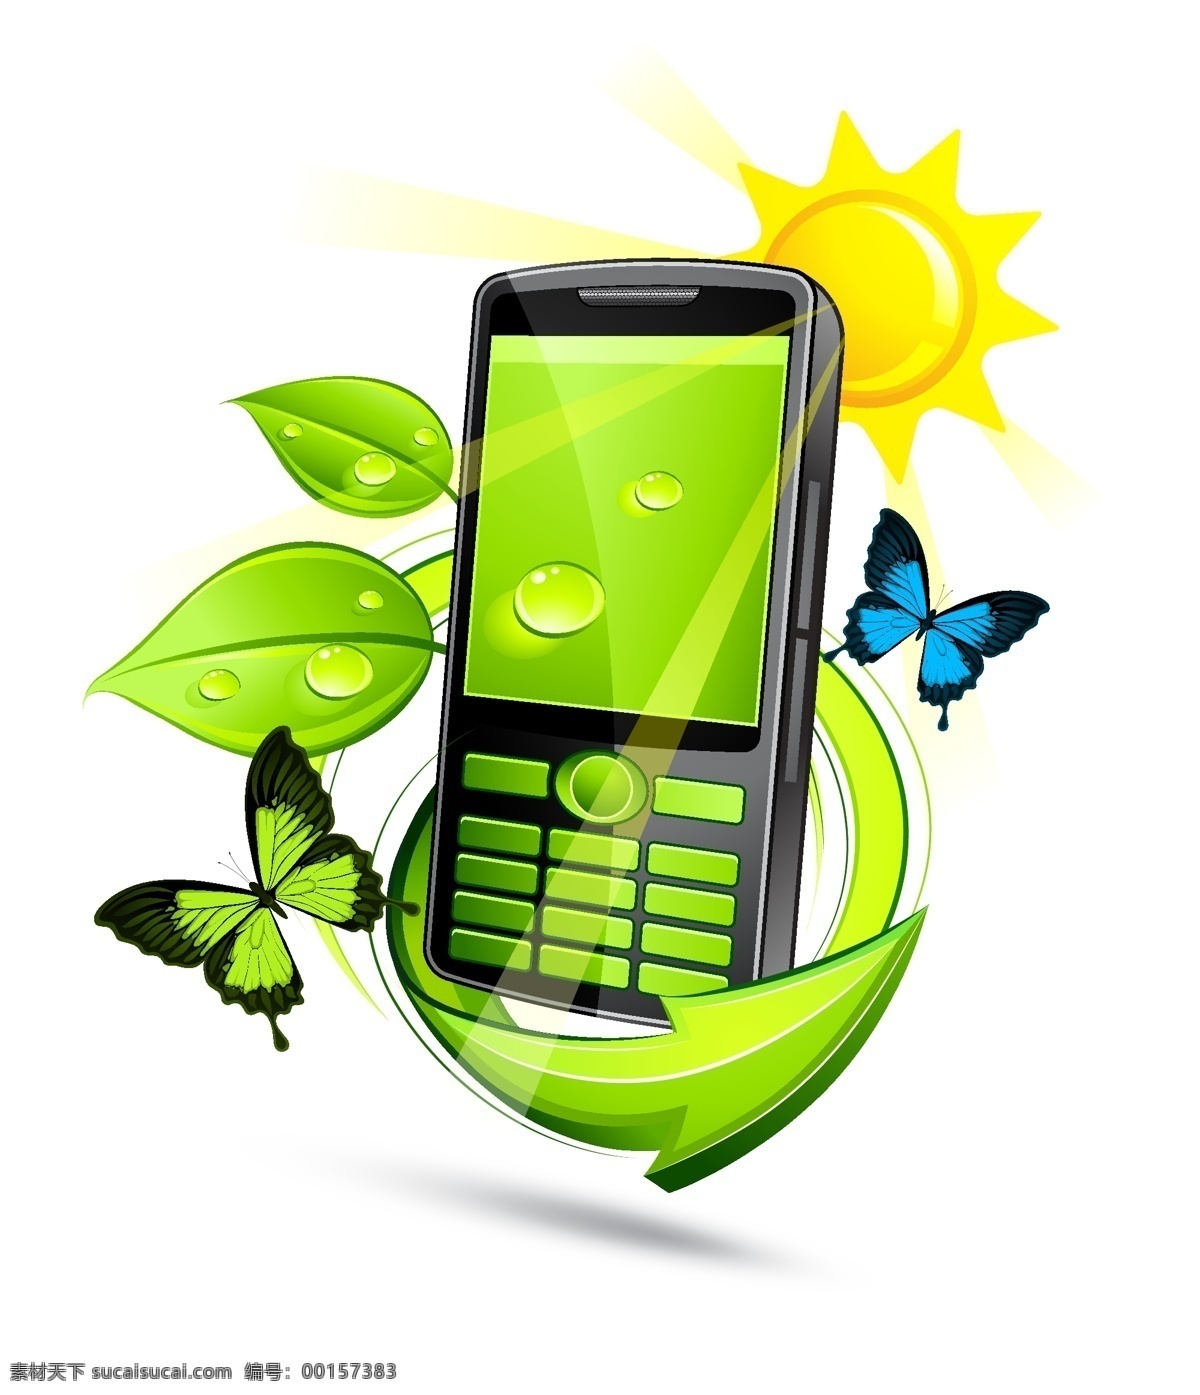 精美 环保 手机 矢量 mobile 动感 动感箭头 蝴蝶 立体箭头 绿叶 矢量素材 水珠 通讯 植物 矢量图 现代科技